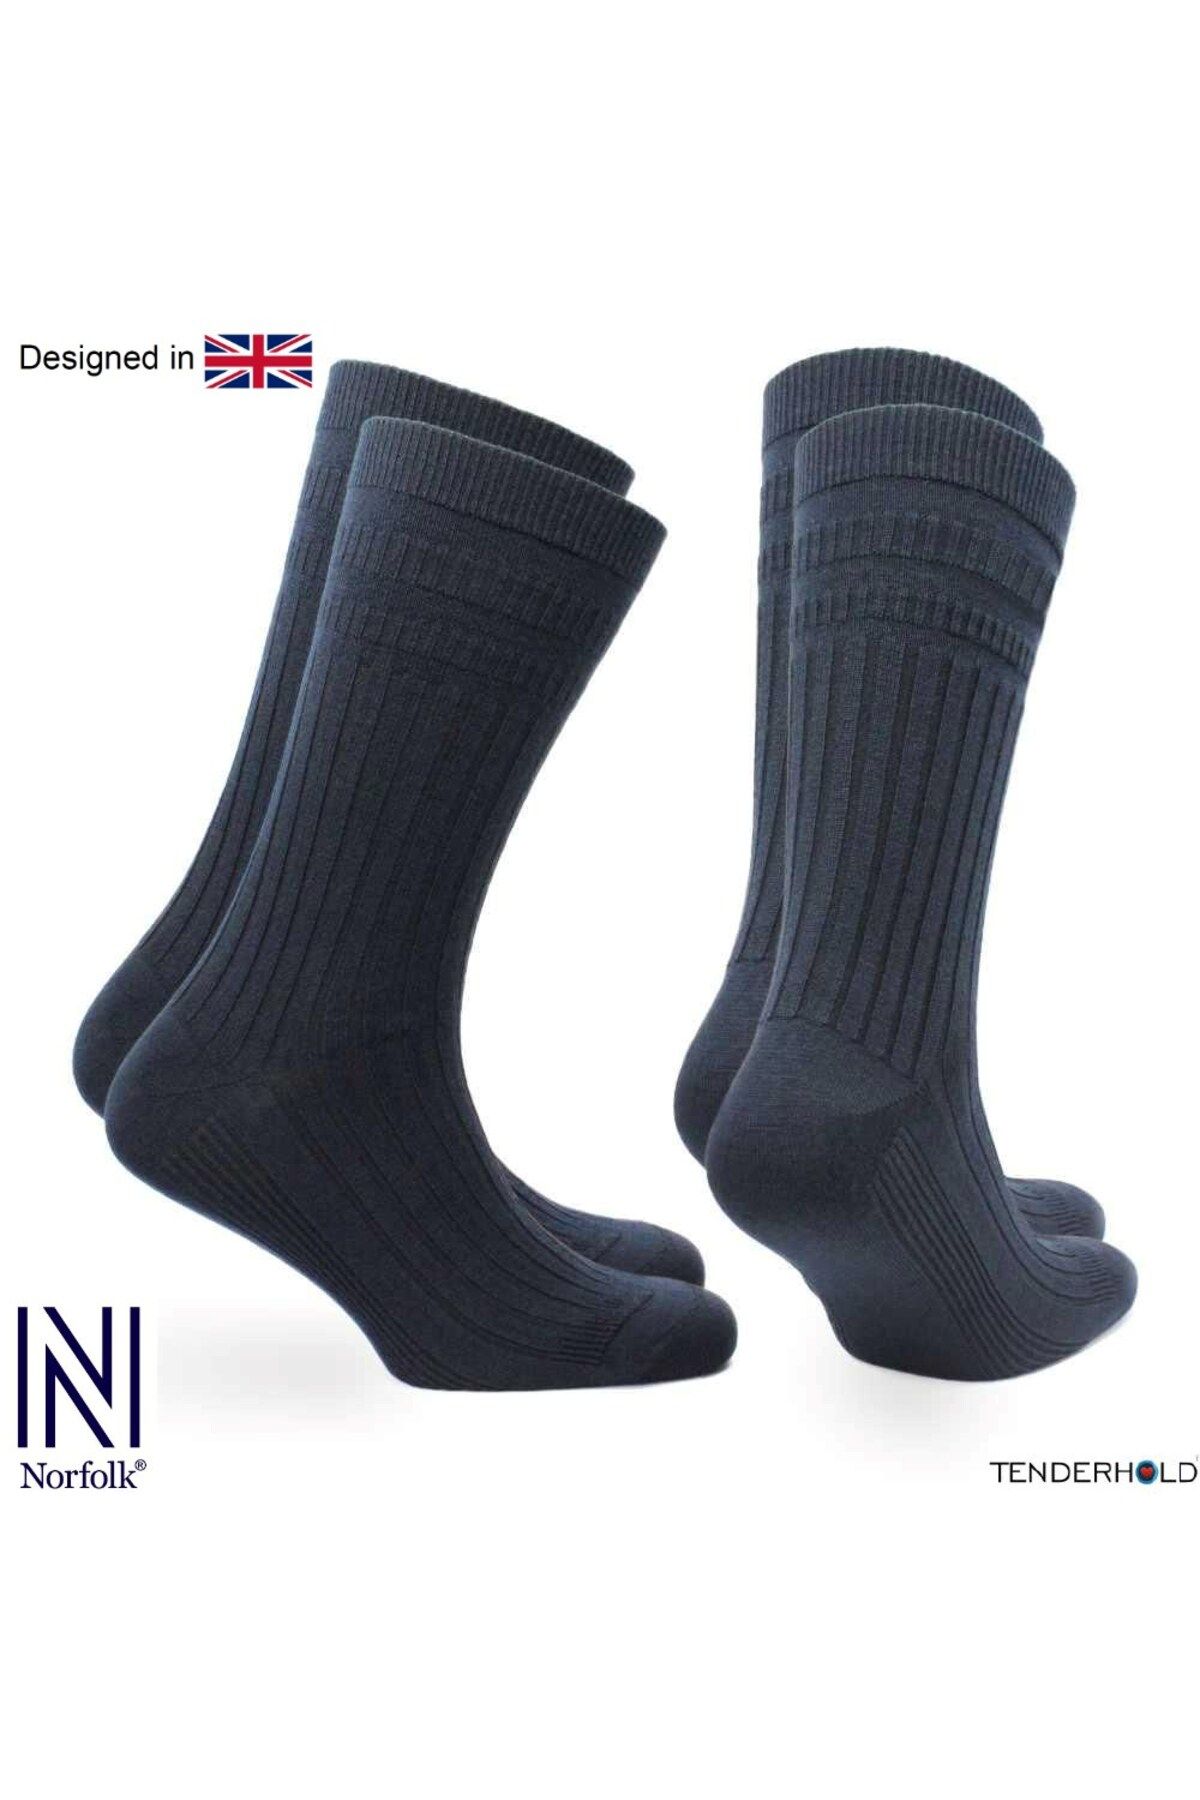 Norfolk Oscar Stretch+ Teknolojisine Sahip Yün Diyabet Dostu Ekstra Esnek Çorap 2 Çift Paket